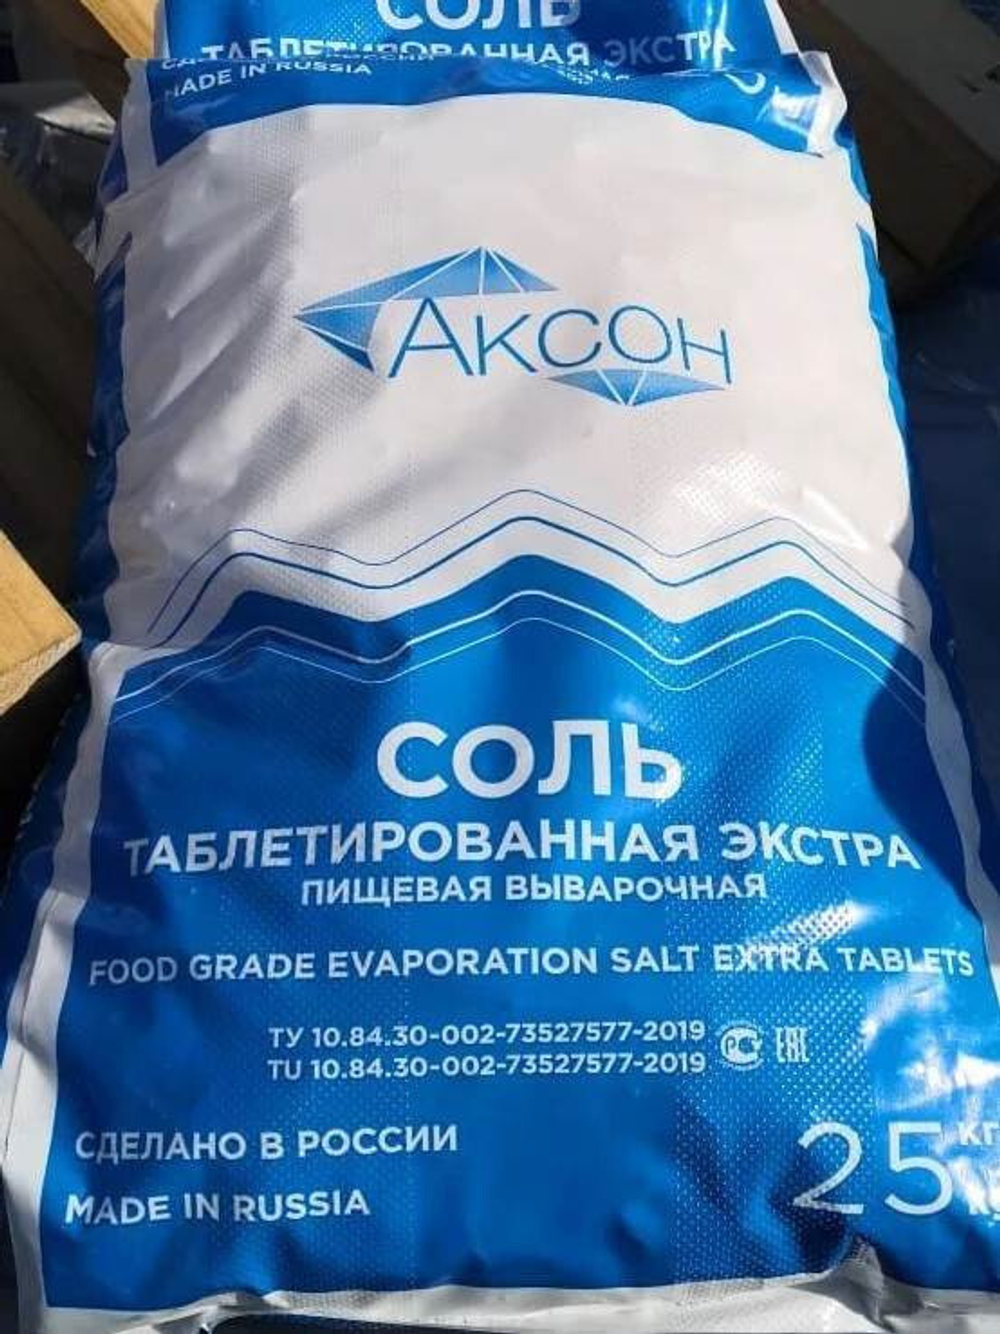 АКСОН Таблетированная соль - NaCl 99.8%, мешок 25 кг (Россия)